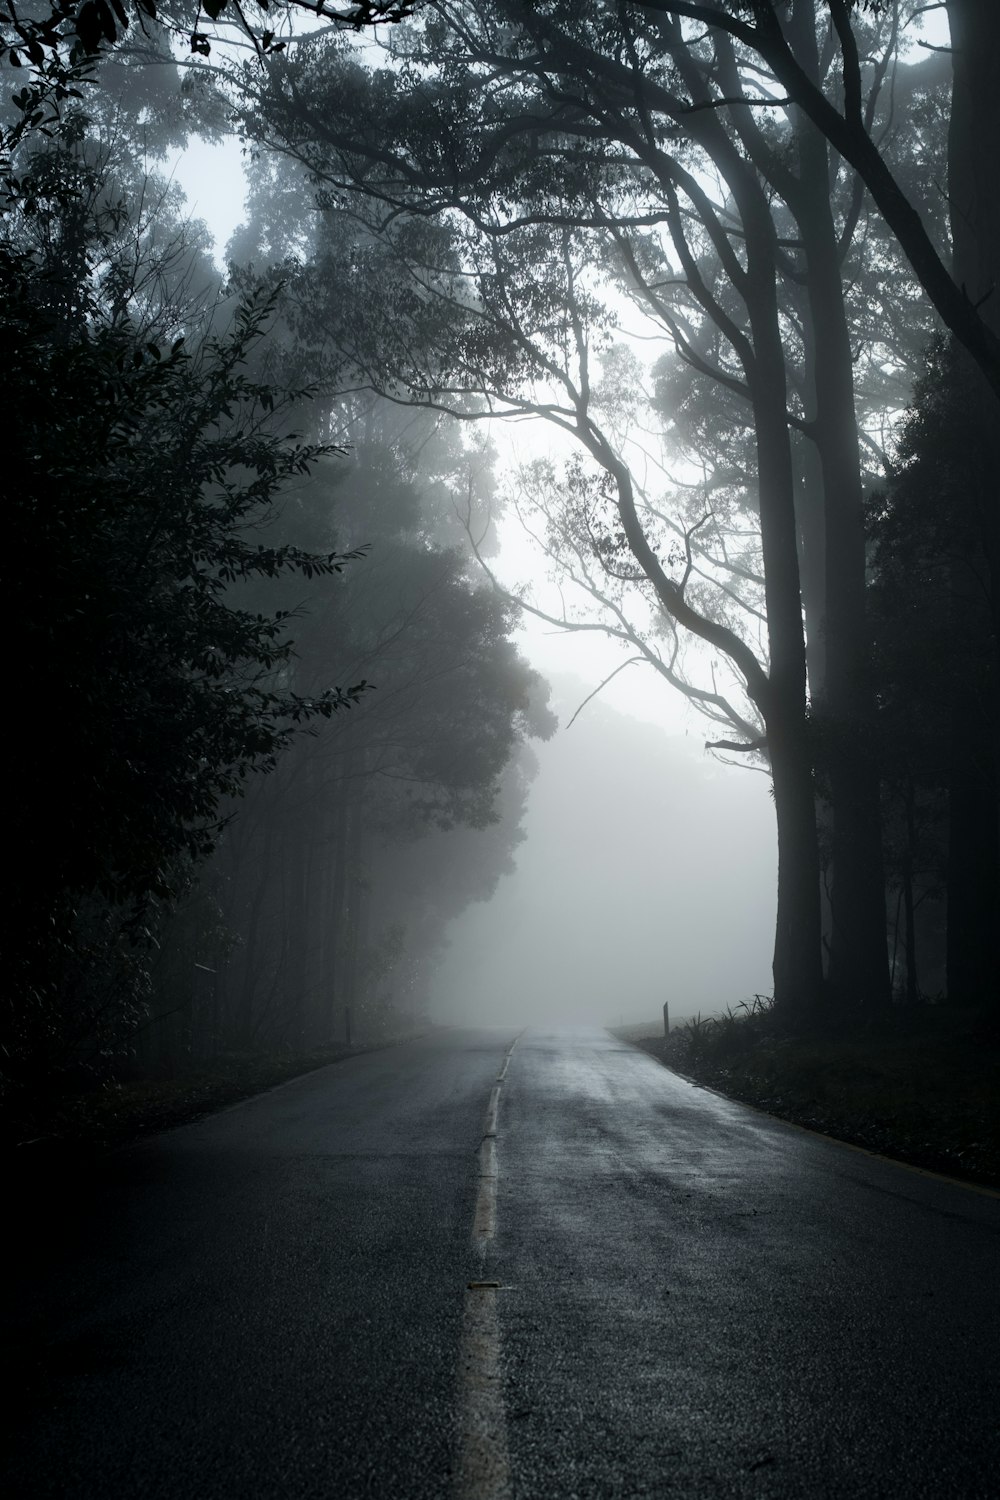 Estrada cinzenta entre árvores em fotografia em tons de cinza